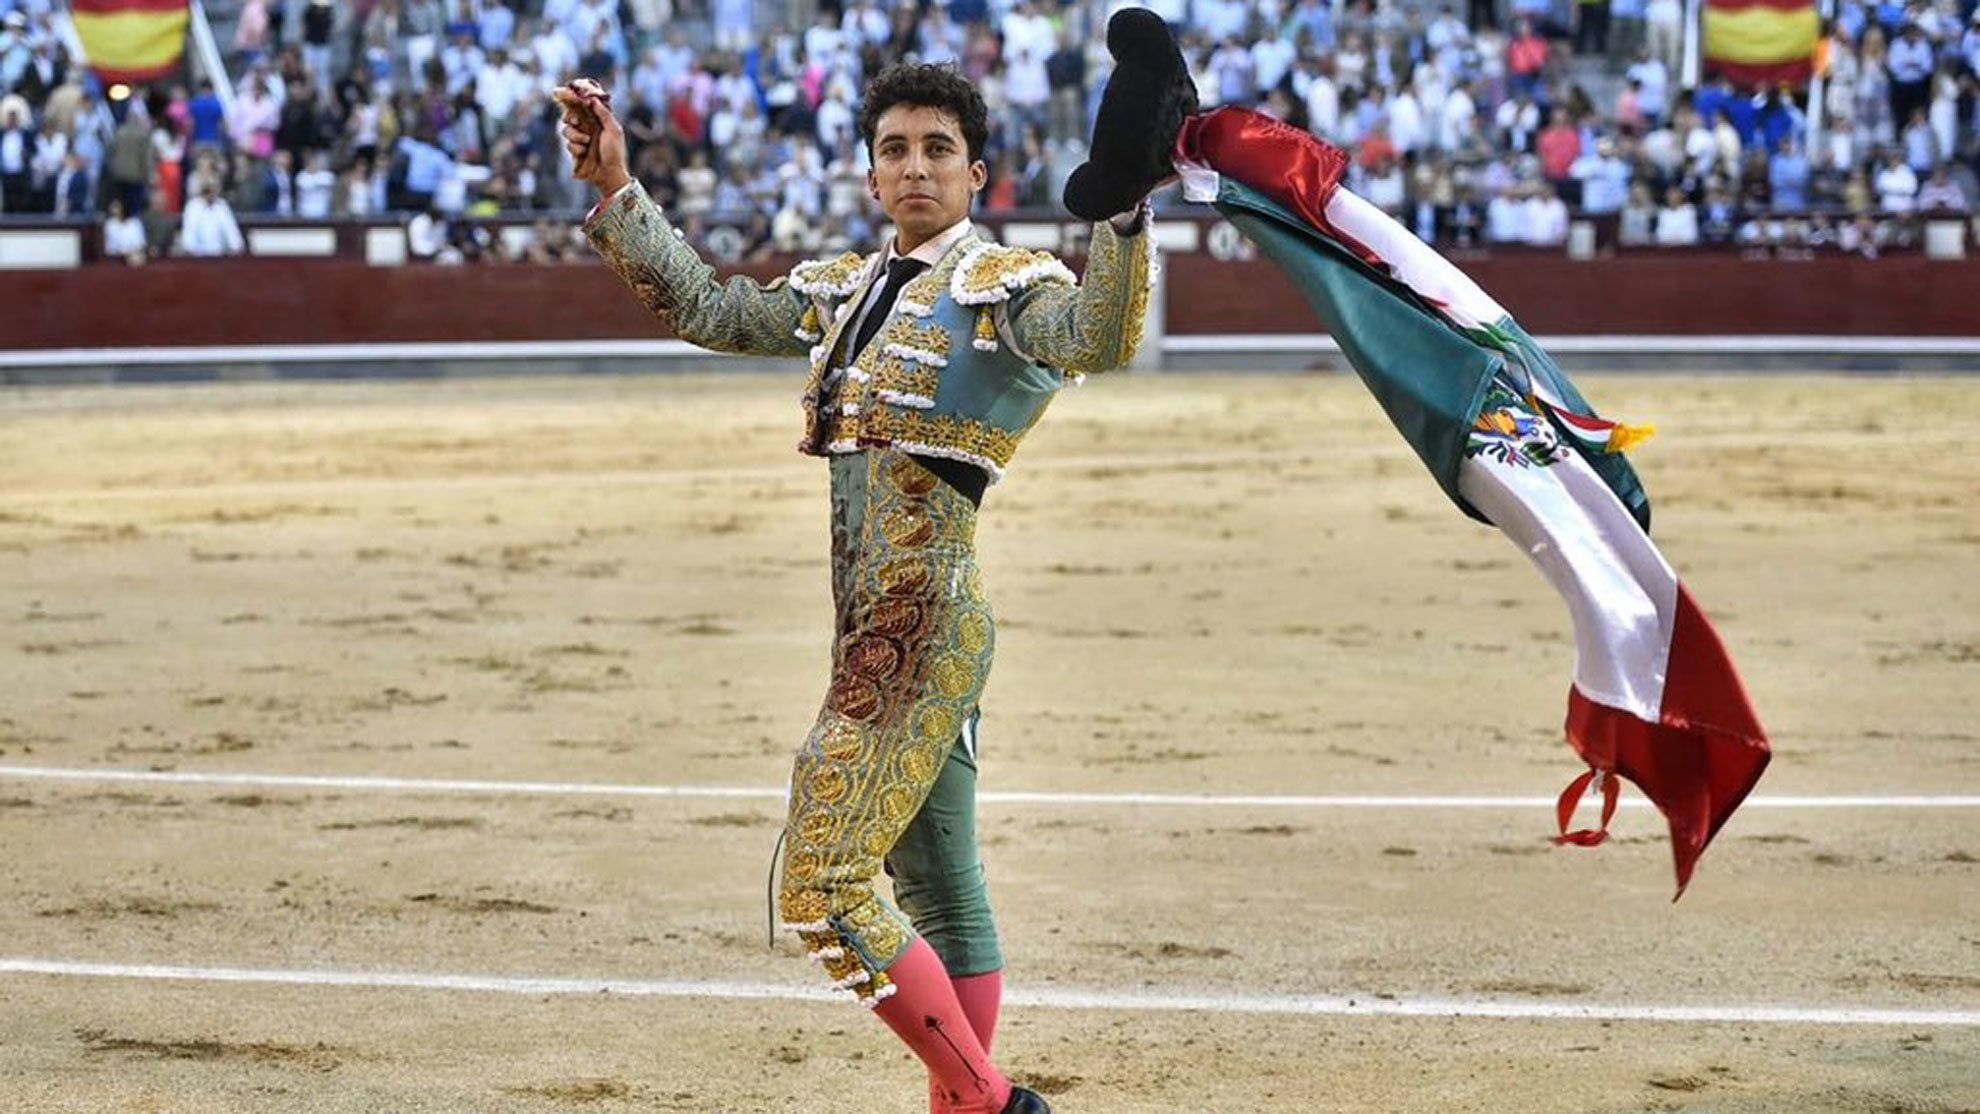 Leo Valadez, otra oreja 'mexicana'